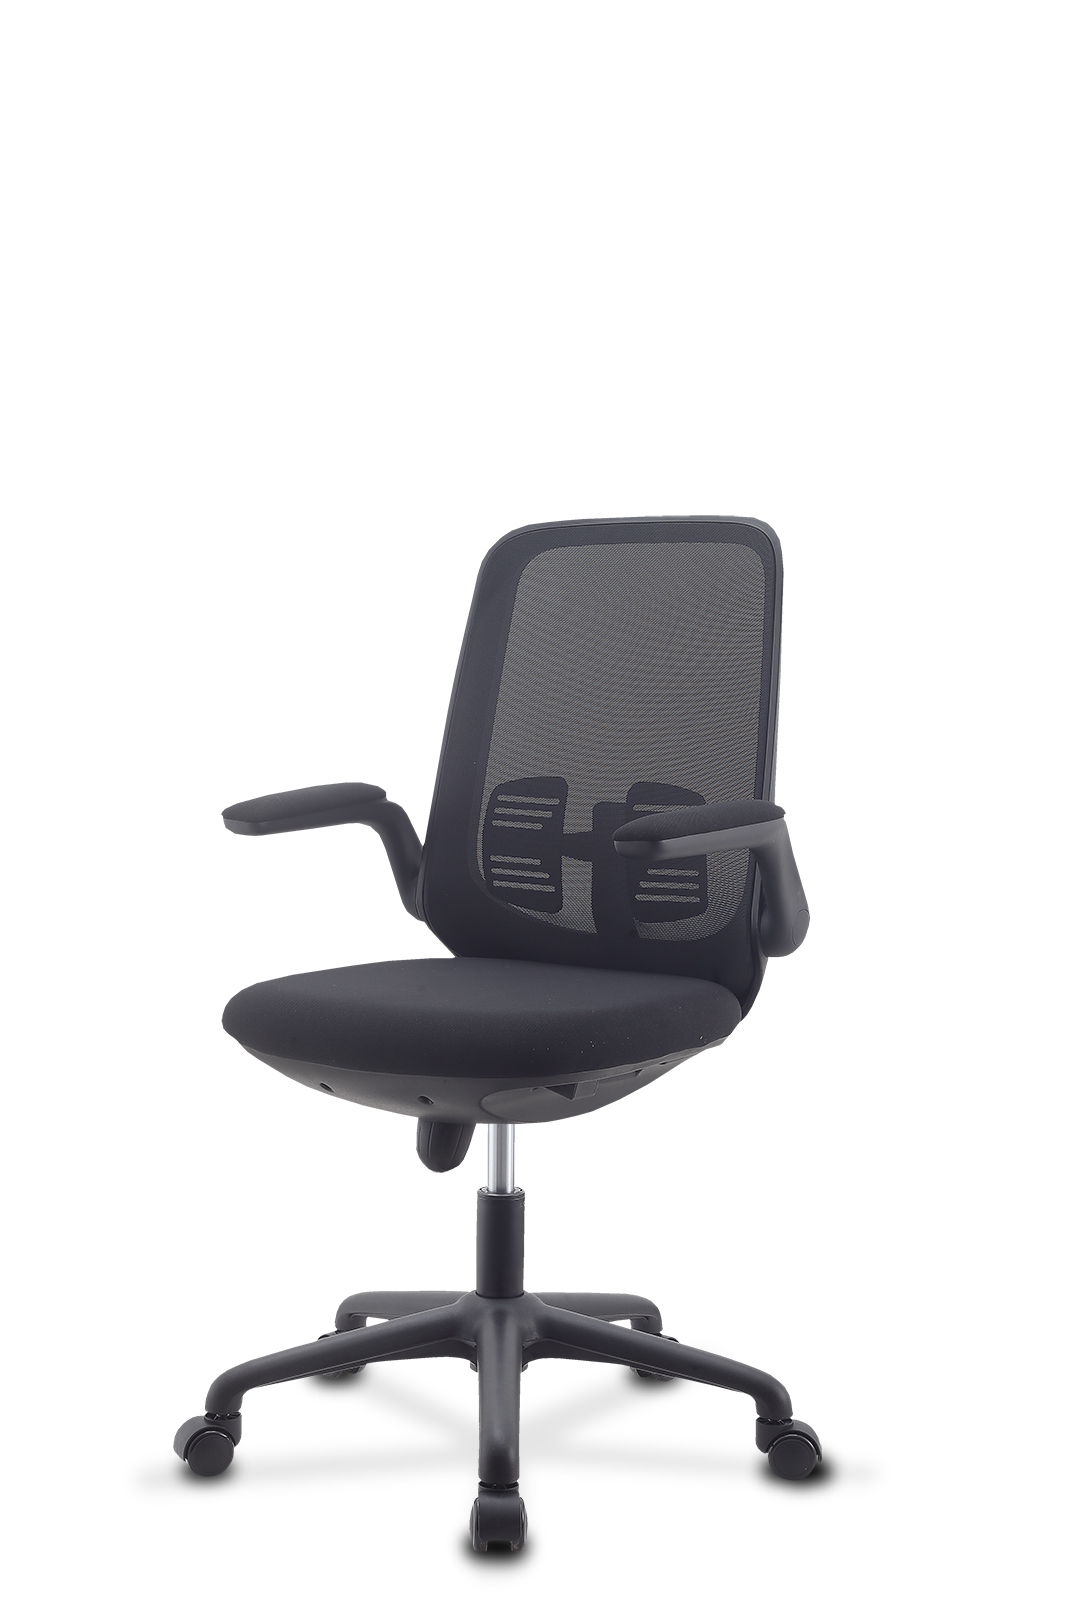 电脑椅 办公椅 学生椅 MS7006 黑胶款 收纳扶手